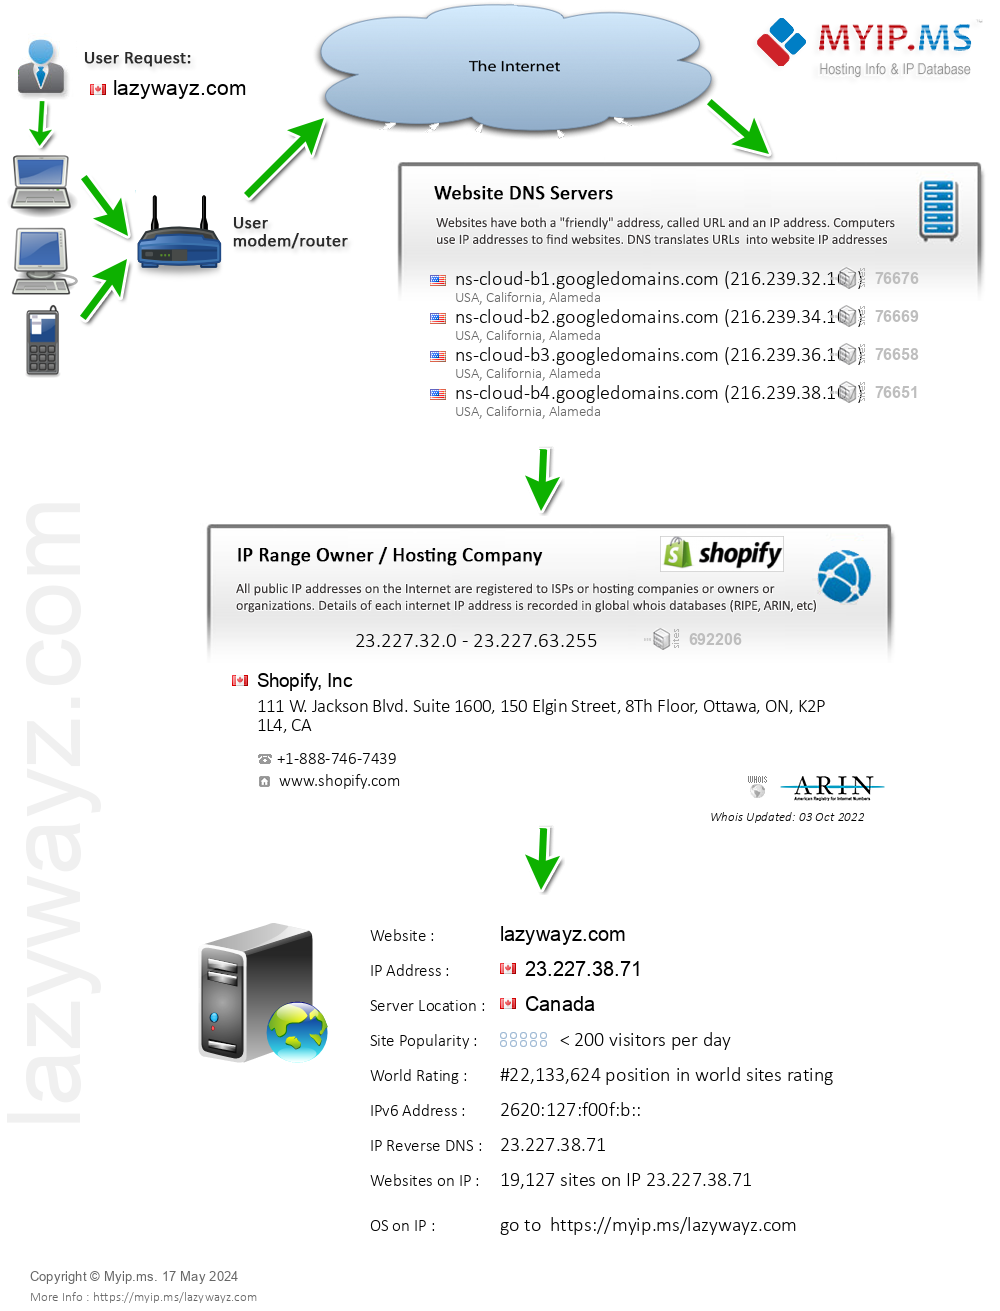 Lazywayz.com - Website Hosting Visual IP Diagram